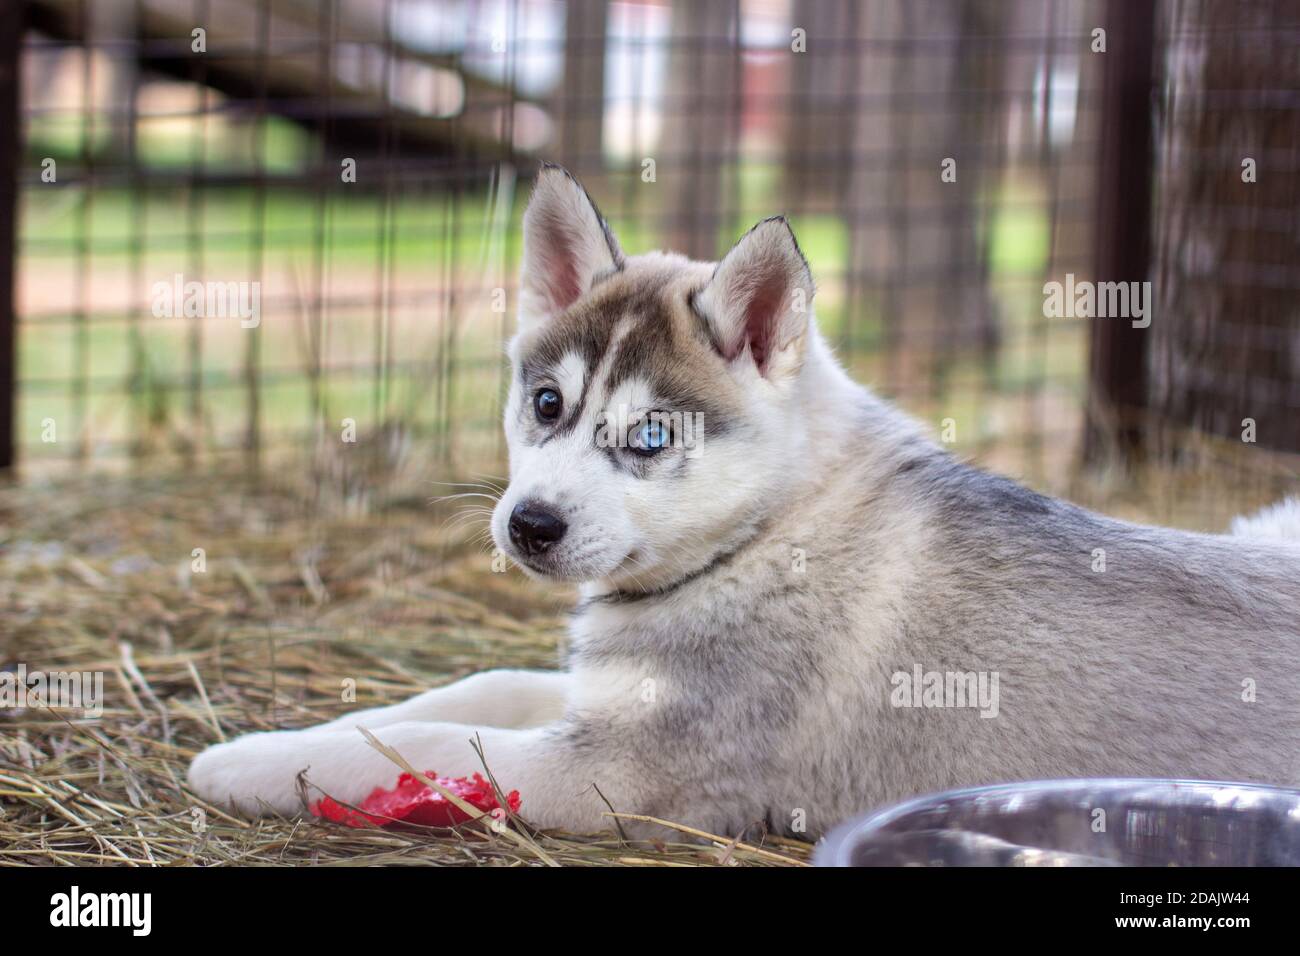 Primo piano di cuccioli di cane Husky che sono in una gabbia e. guardare Foto Stock